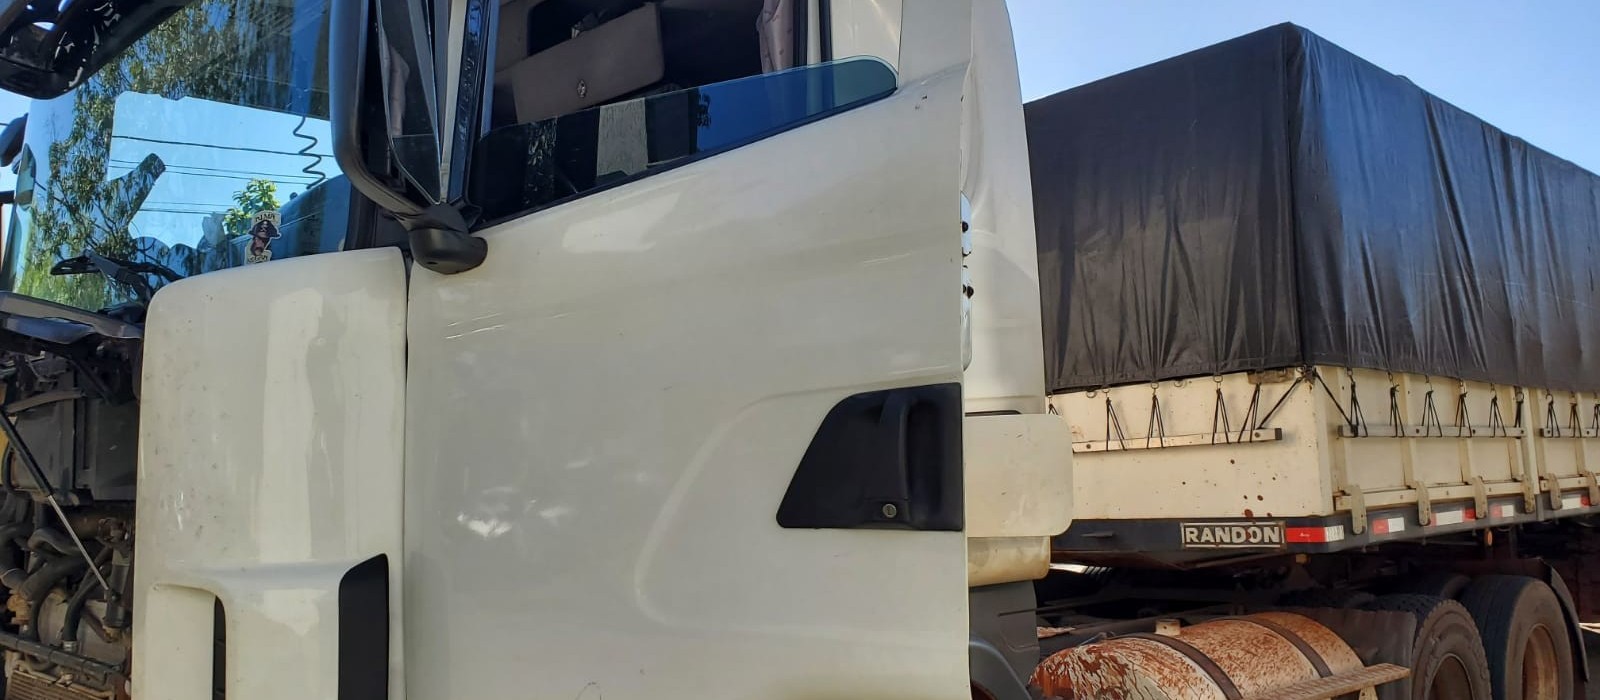 Polícia Federal encontra 170 kg de cocaína escondidos em carreta que transportava milho